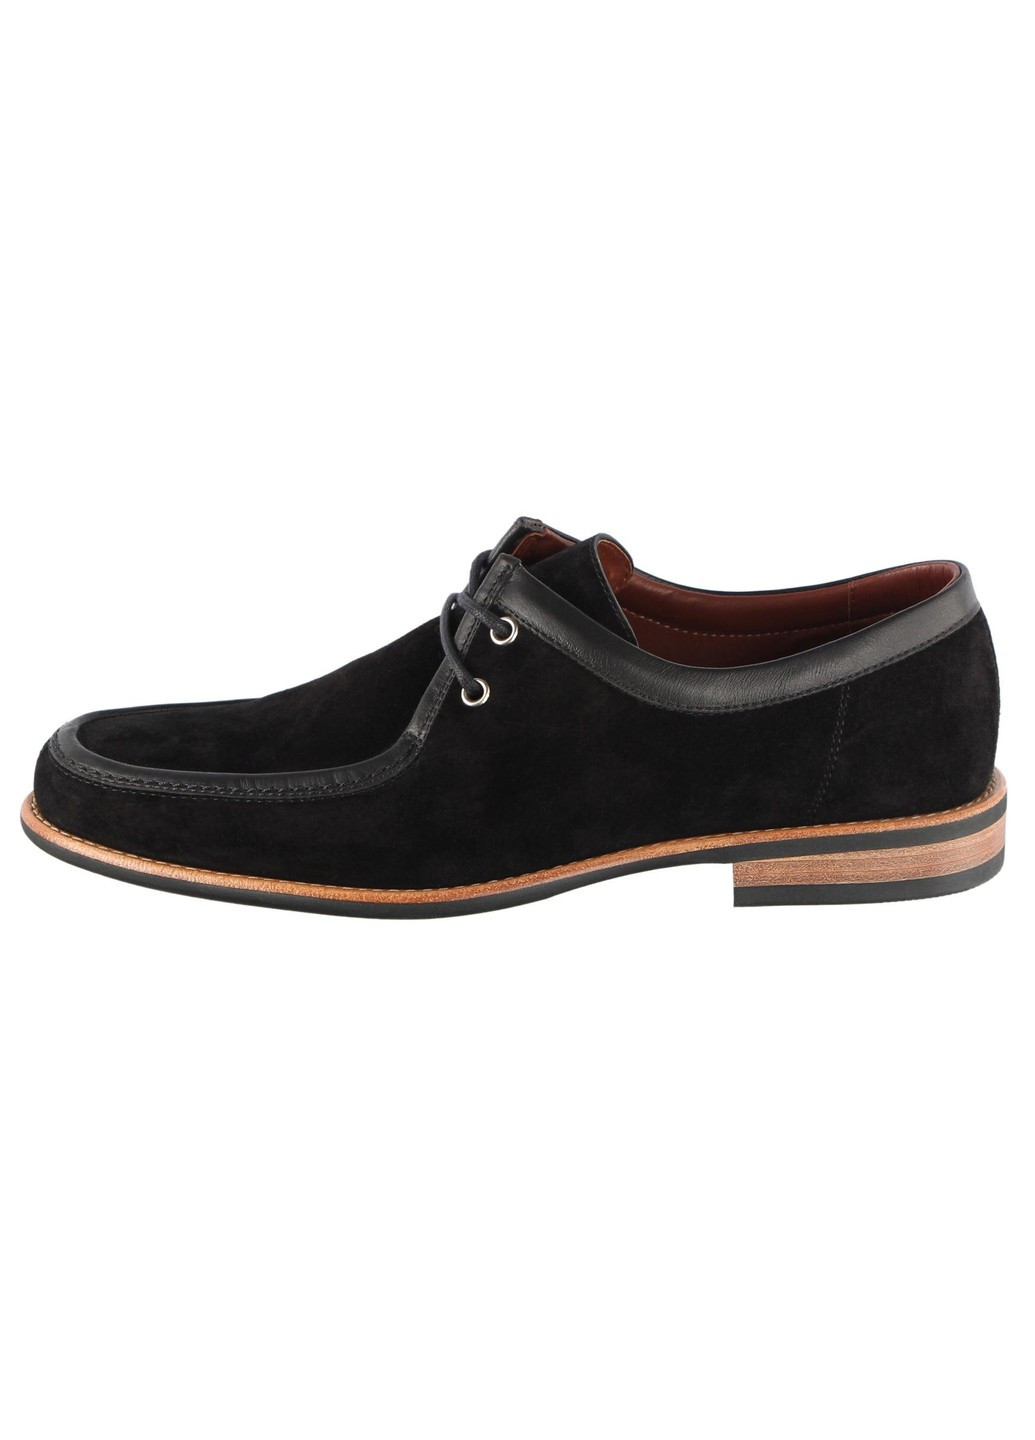 Черные мужские классические туфли 4836 Nord на шнурках